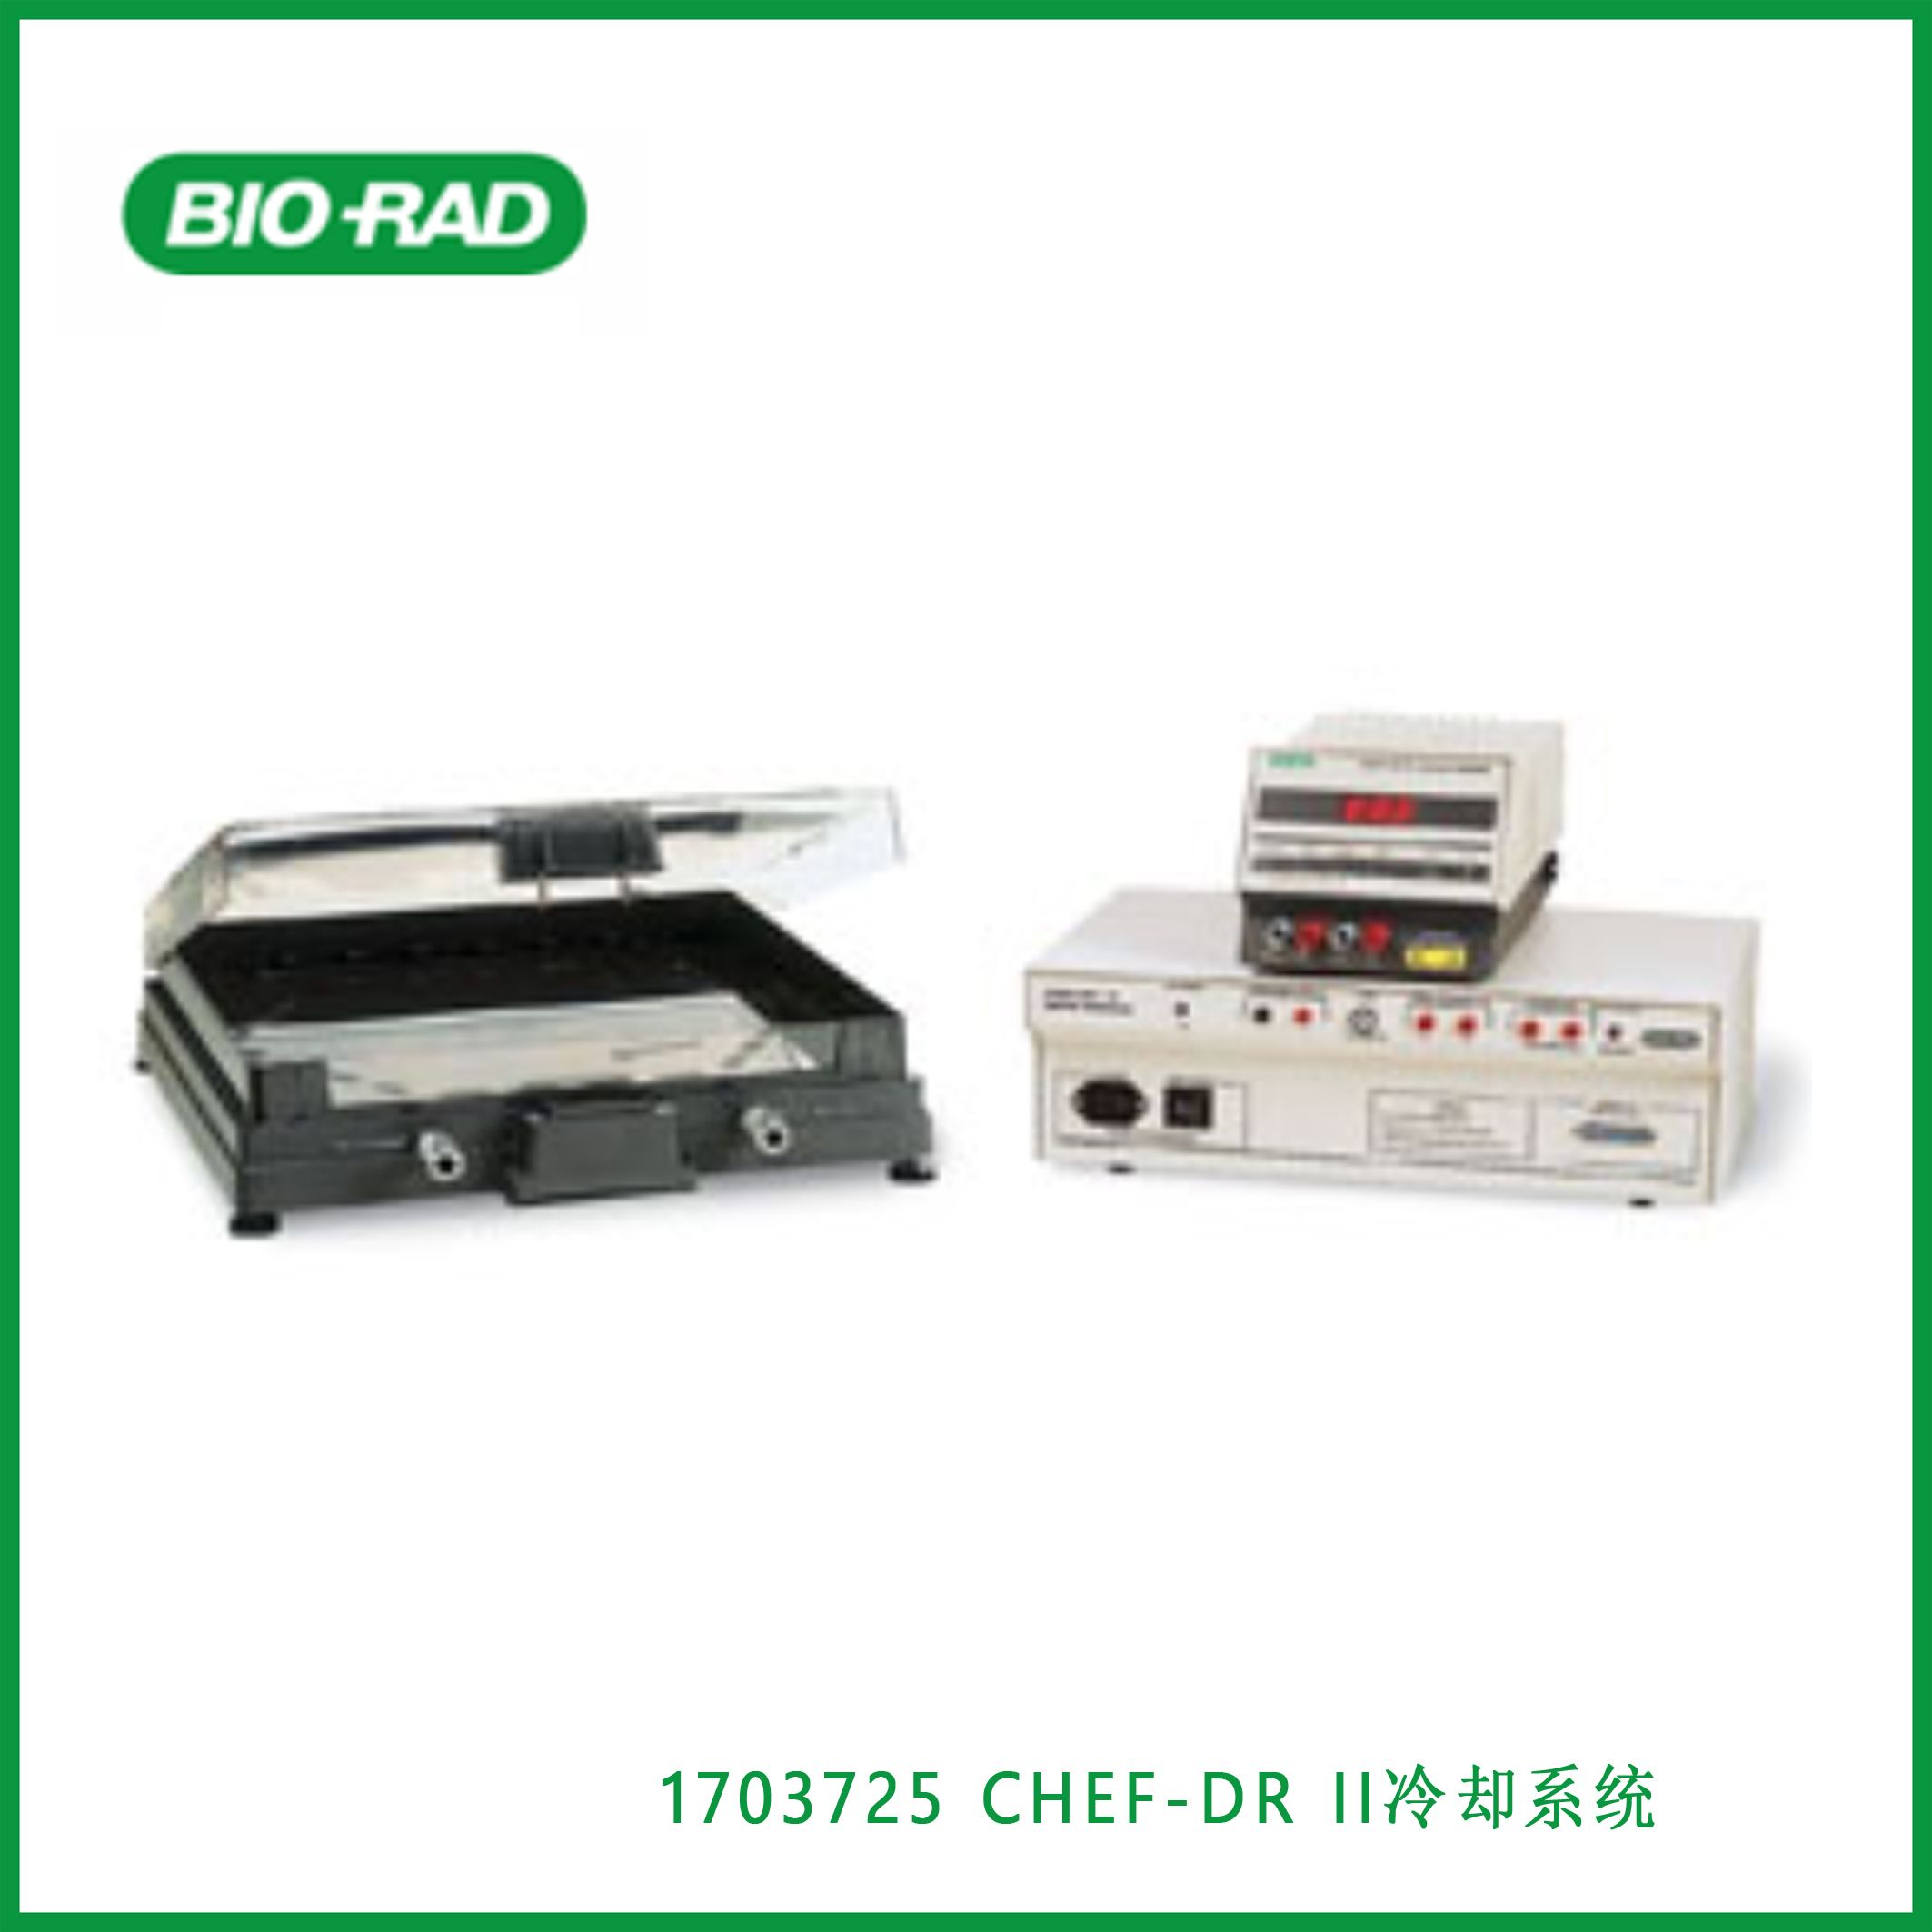 伯乐Bio-Rad1703725CHEF-DR II Chiller System，CHEF-DR II冷却系统，现货